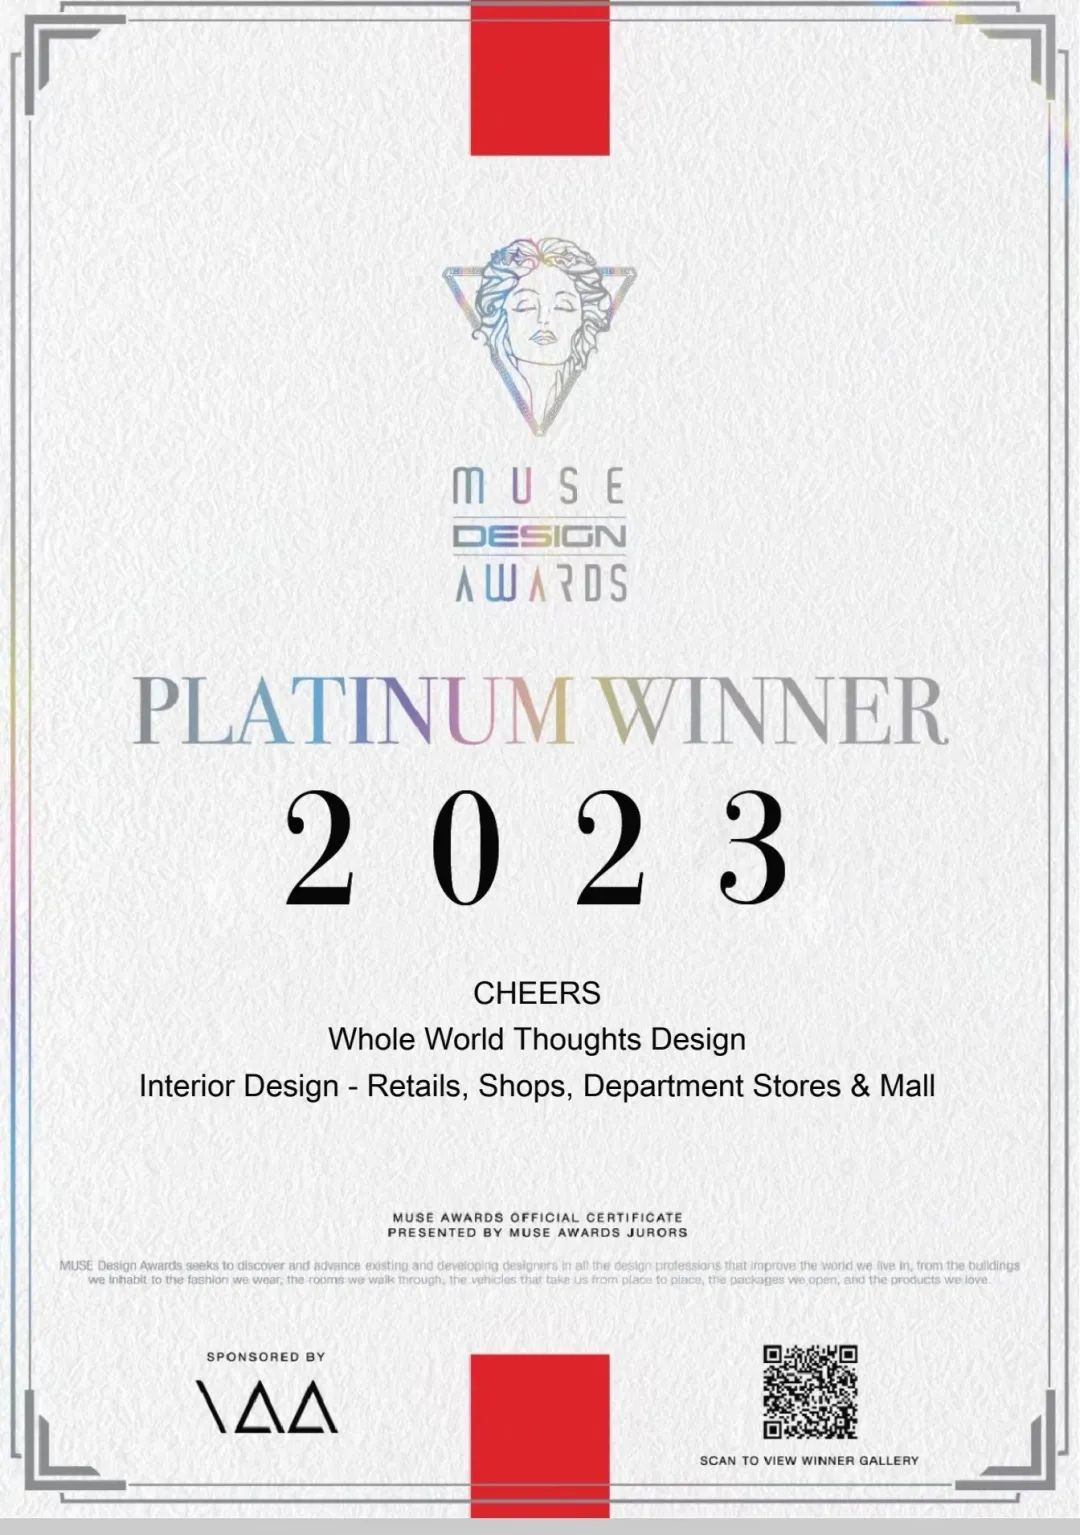 MUSE Design Awards (缪斯设计奖) 是全球创意设计领域最具影响力的国际奖项之一，由国际奖项协会主办，历史悠久，含金量高，以严格的评审体系和高质...